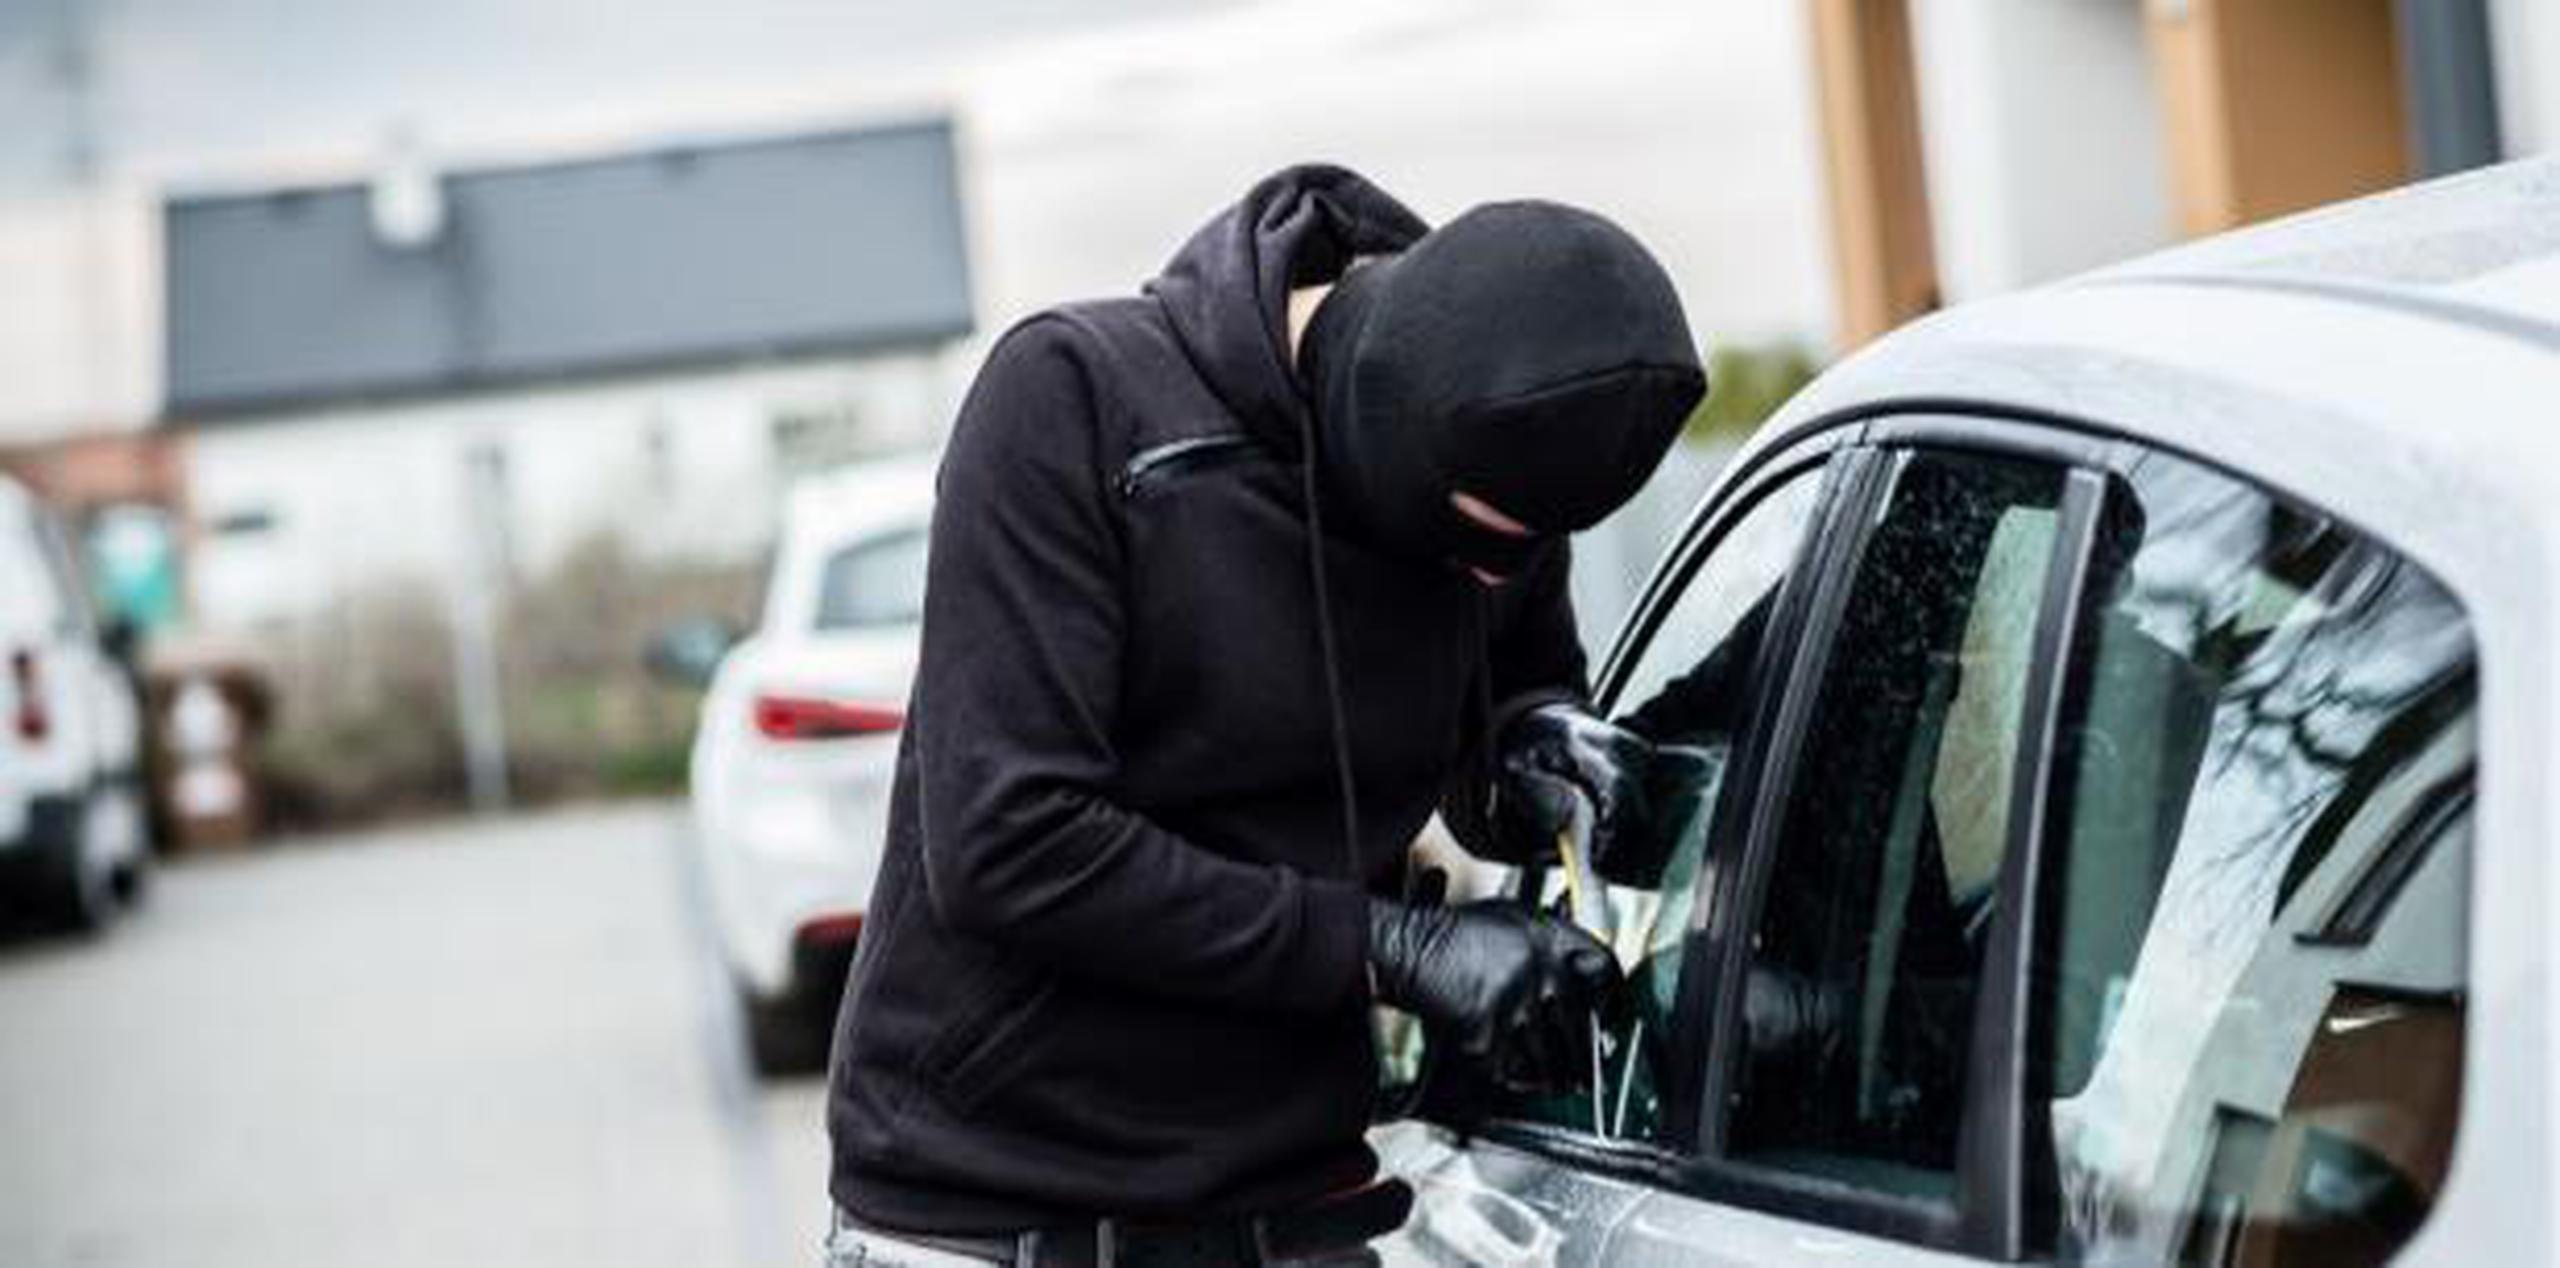 En ocasiones usan aplicaciones de localización, una vez identifican el auto, para que el el delincuente que se lo vaya a llevar sepa dónde está. (Shutterstock)